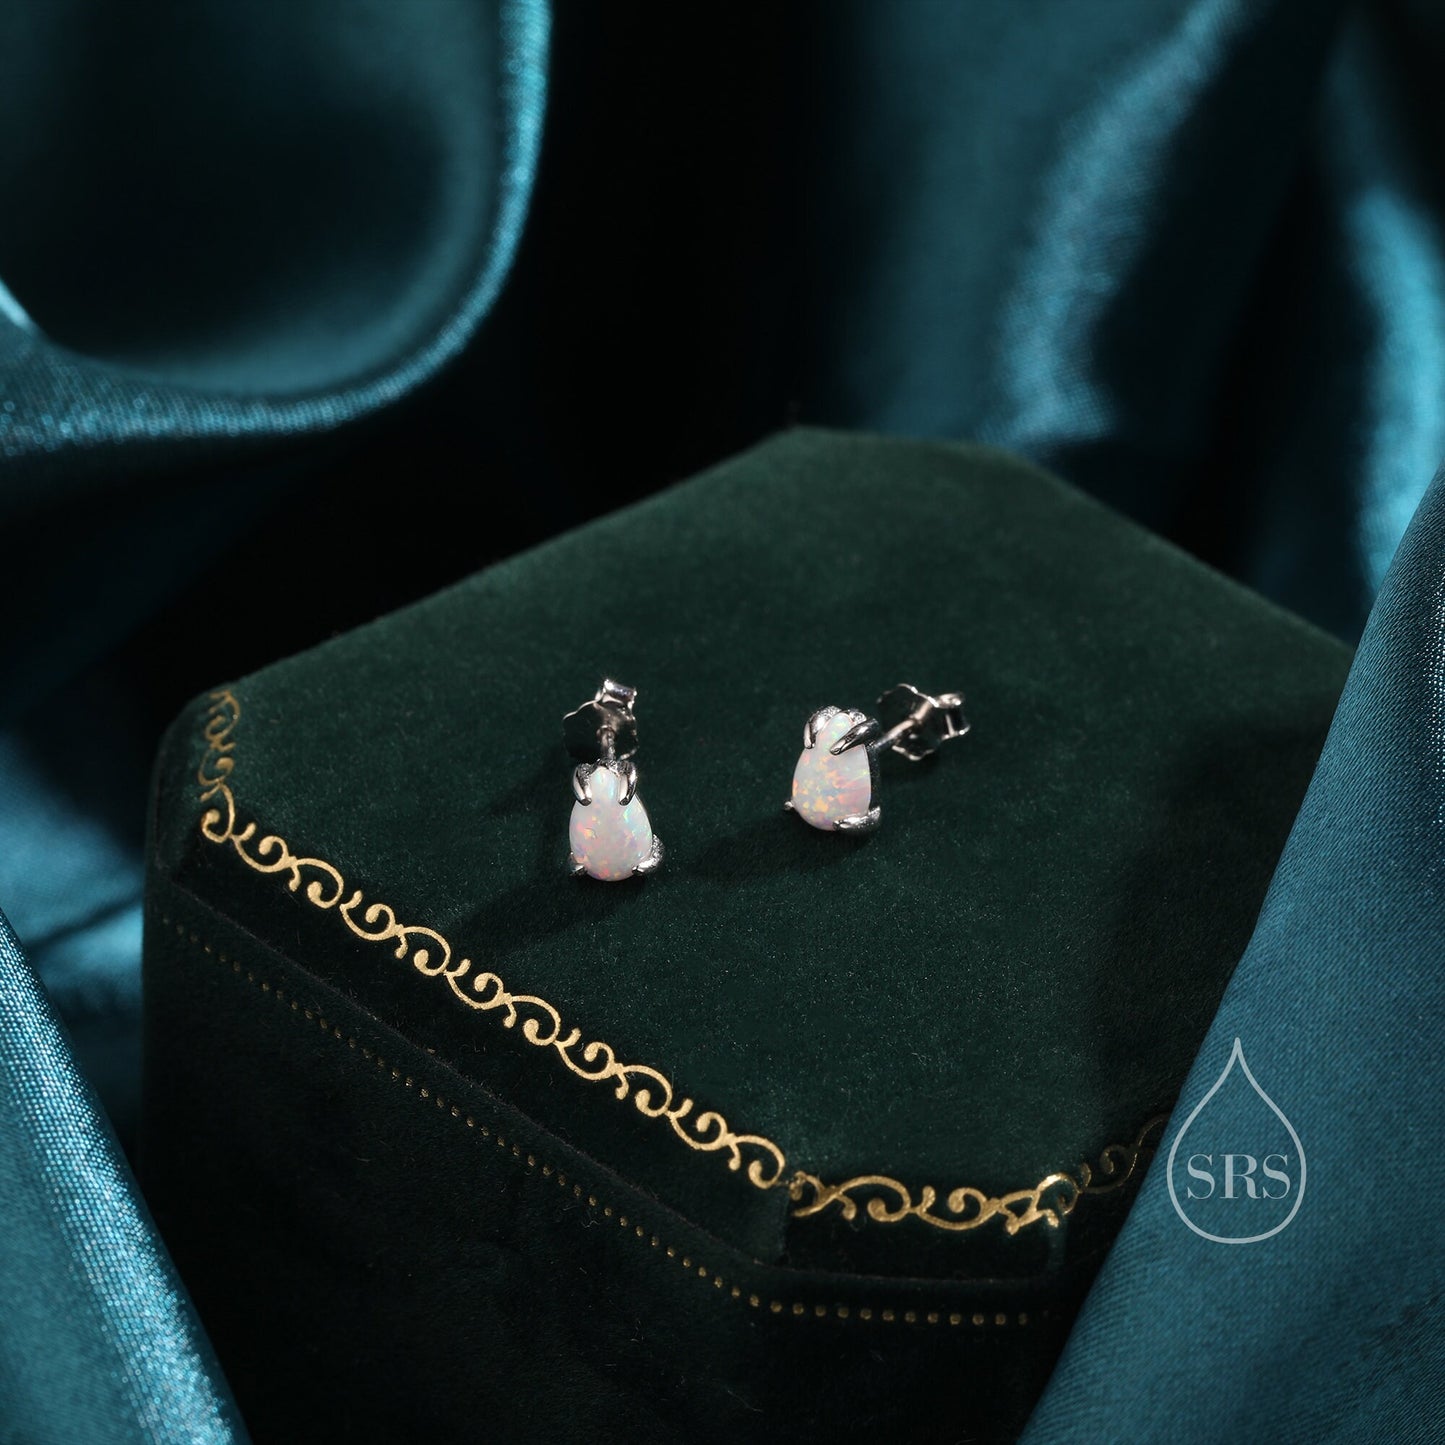 White Opal Droplet Stud Earrings in Sterling Silver, Silver or Gold, Tiny Opal Earrings, Pear Shape Opal Stud